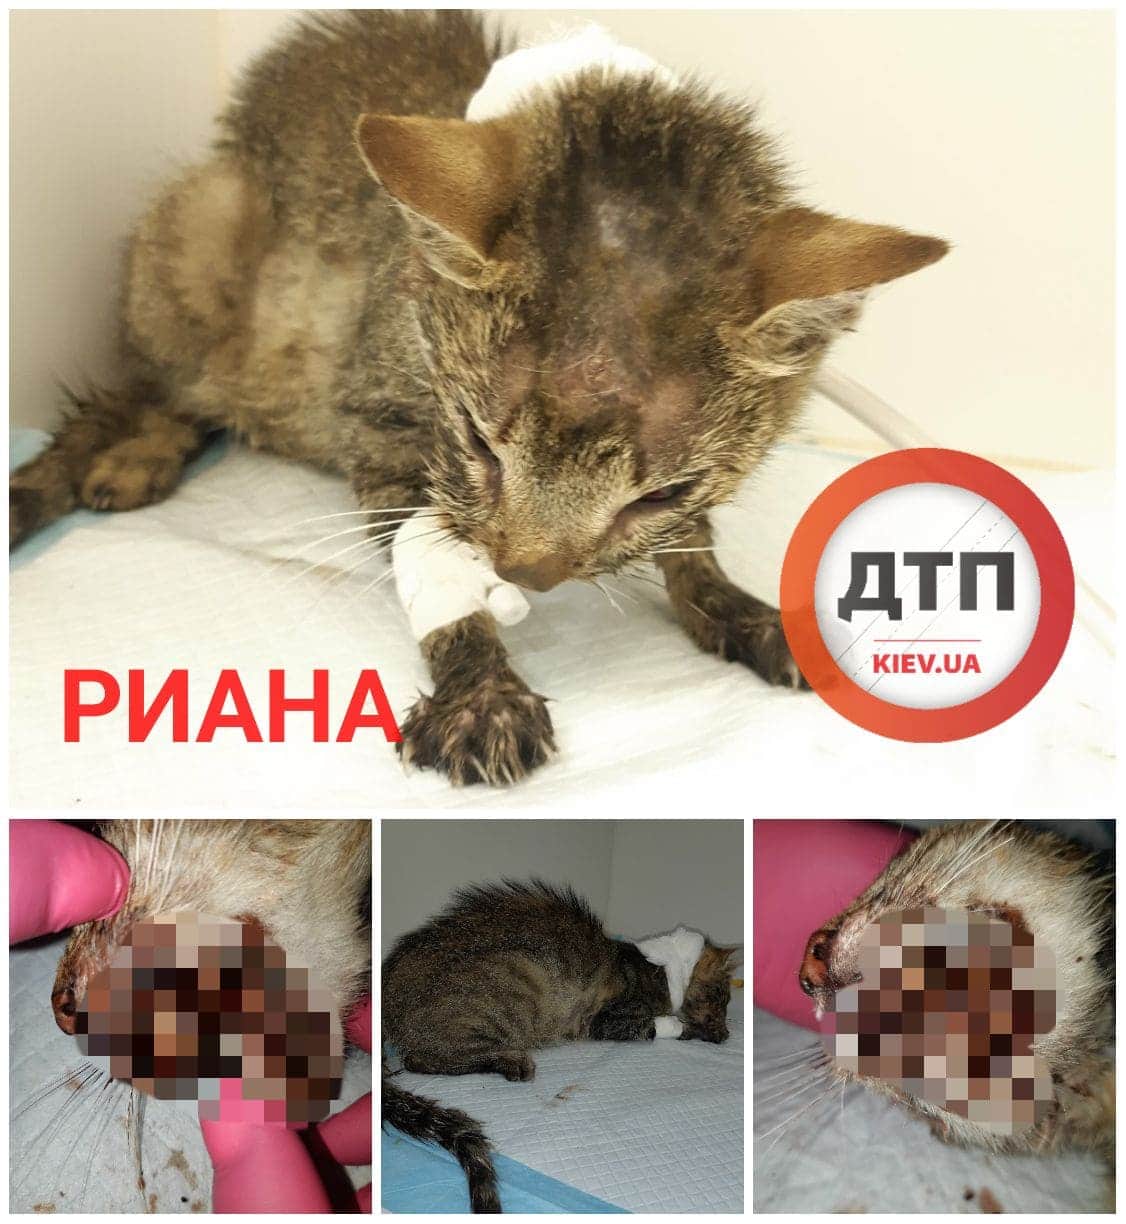 Кошечка Риана, доставленная в Рыжий кот с раздавленной головой в критическом состоянии: стабильно тяжелая, боремся за жизнь